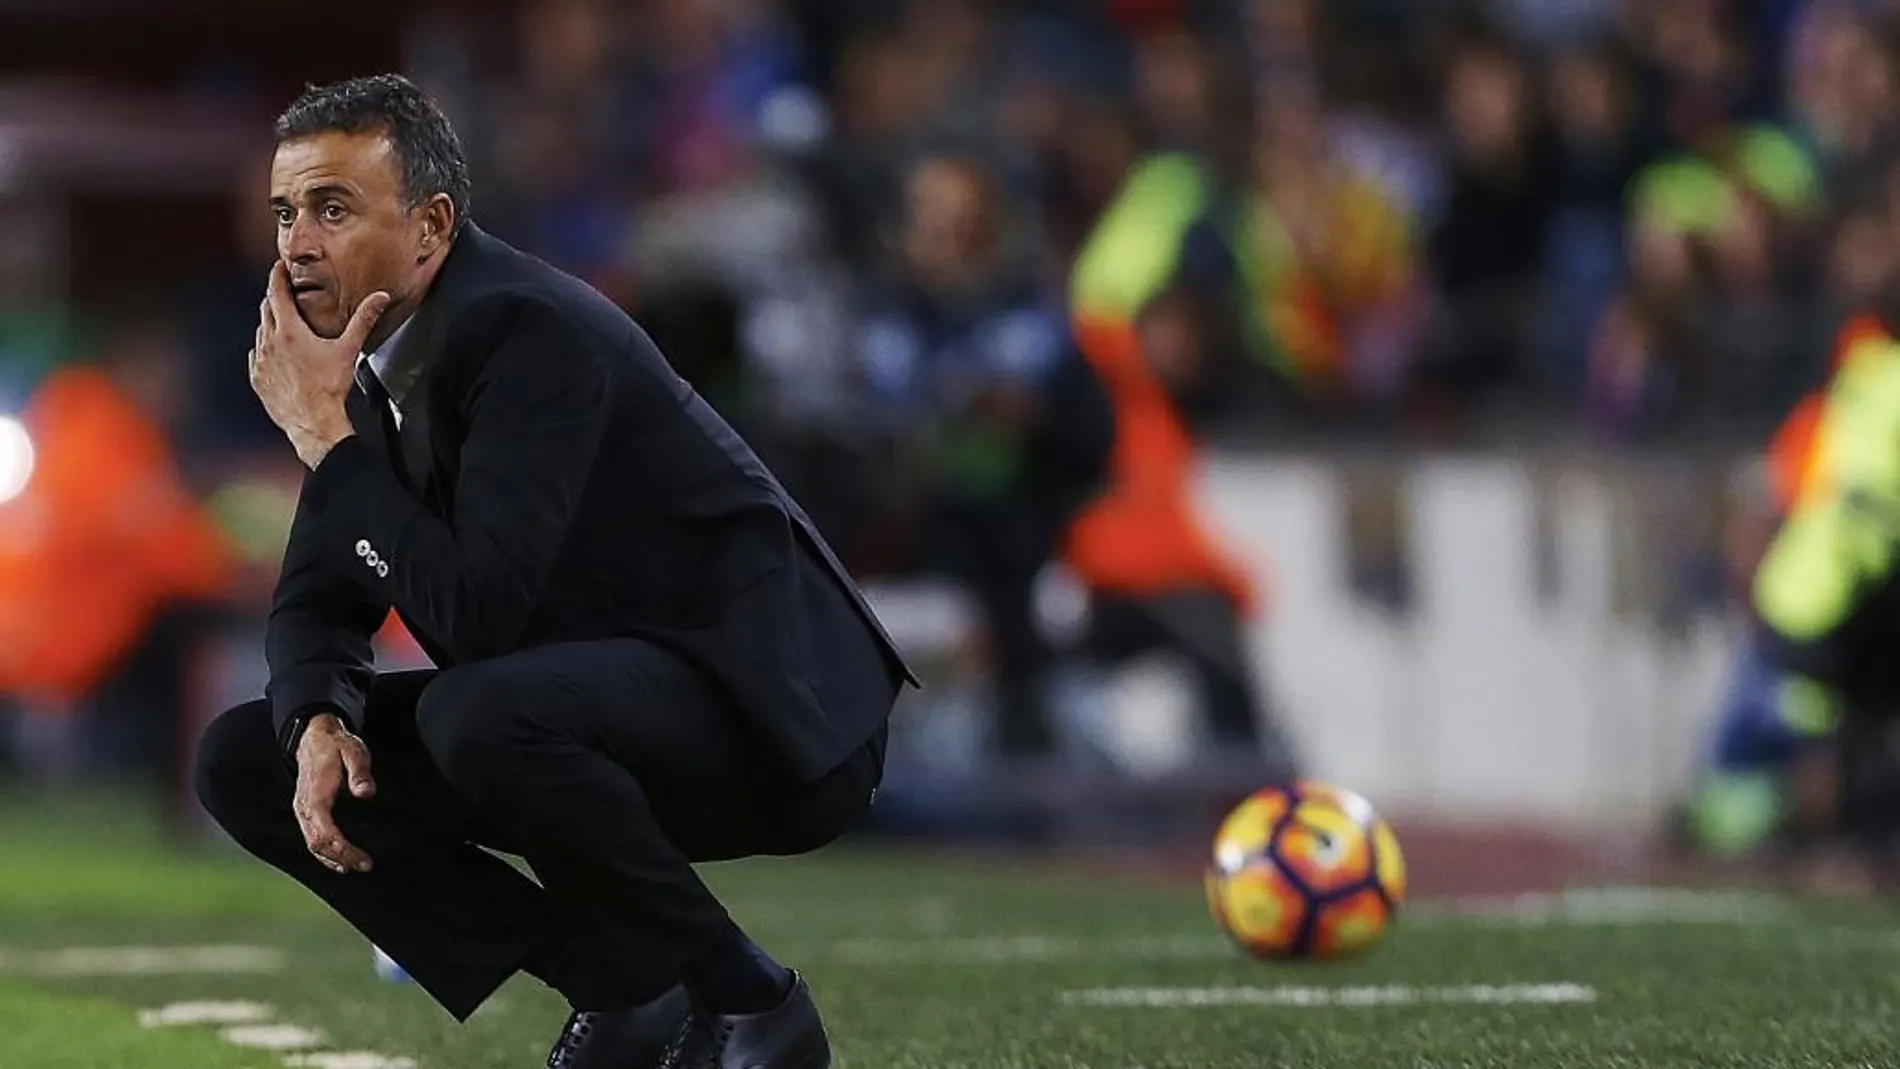 El entrenador del FC Barcelona, Luis Enrique, se lamenta tras fallar una ocasión de gol frente al Málaga CF